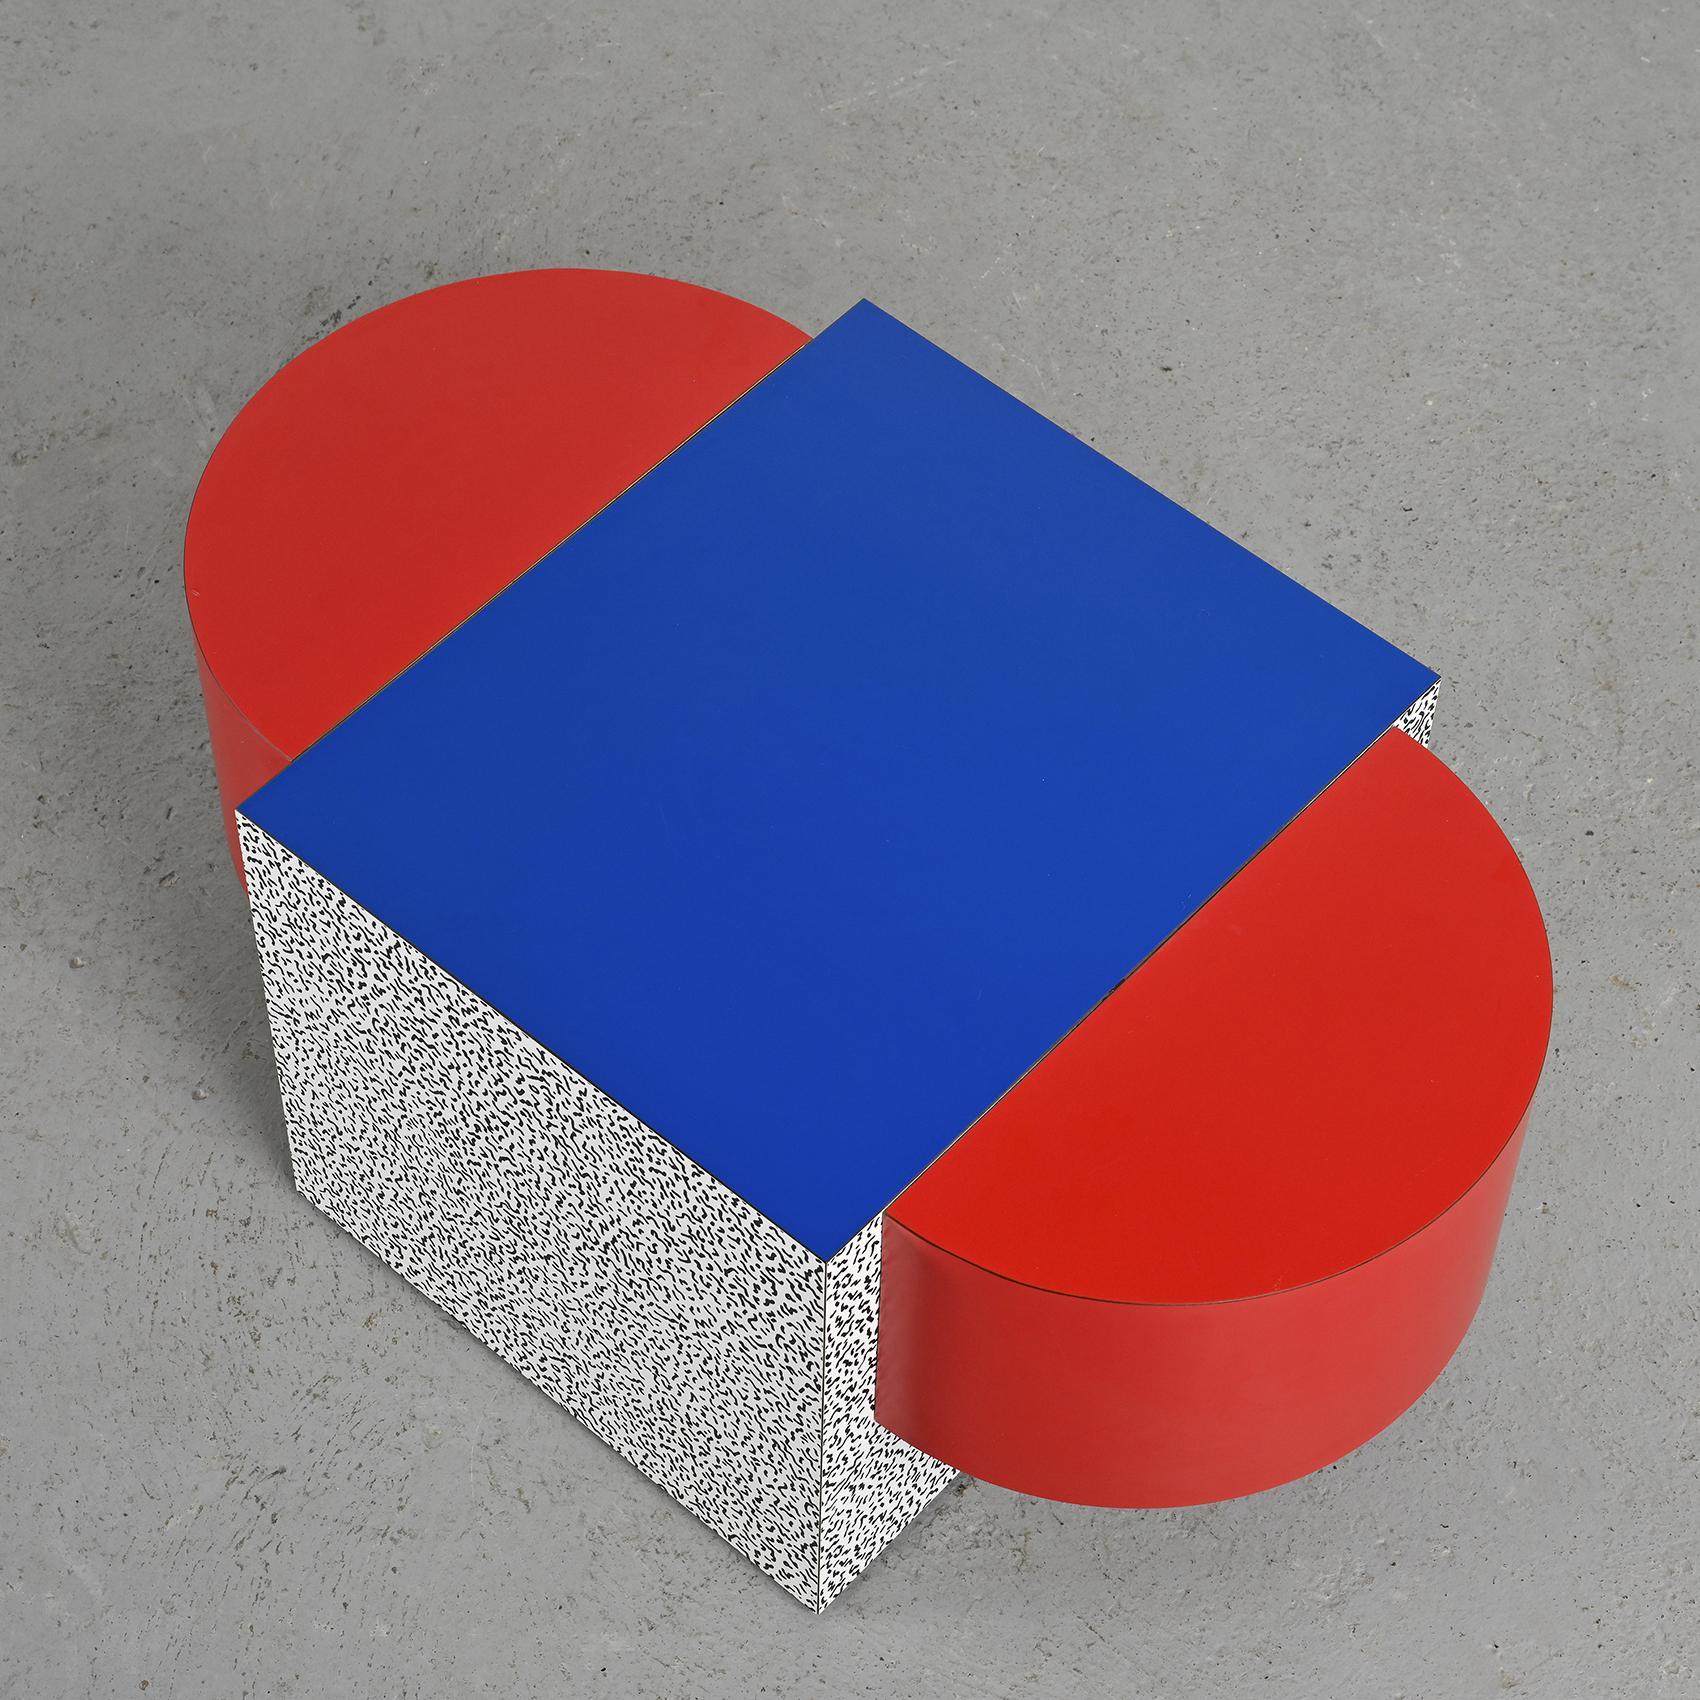 Der Table Tony No.3 ist ein schönes Beispiel für die Arbeit von Ettore Sottsass und wurde 1979 von dem berühmten Designer entworfen. Dieses besondere Stück wurde um 1990 vom Anthologie Quartett veröffentlicht.

Es zeichnet sich durch eine ovale